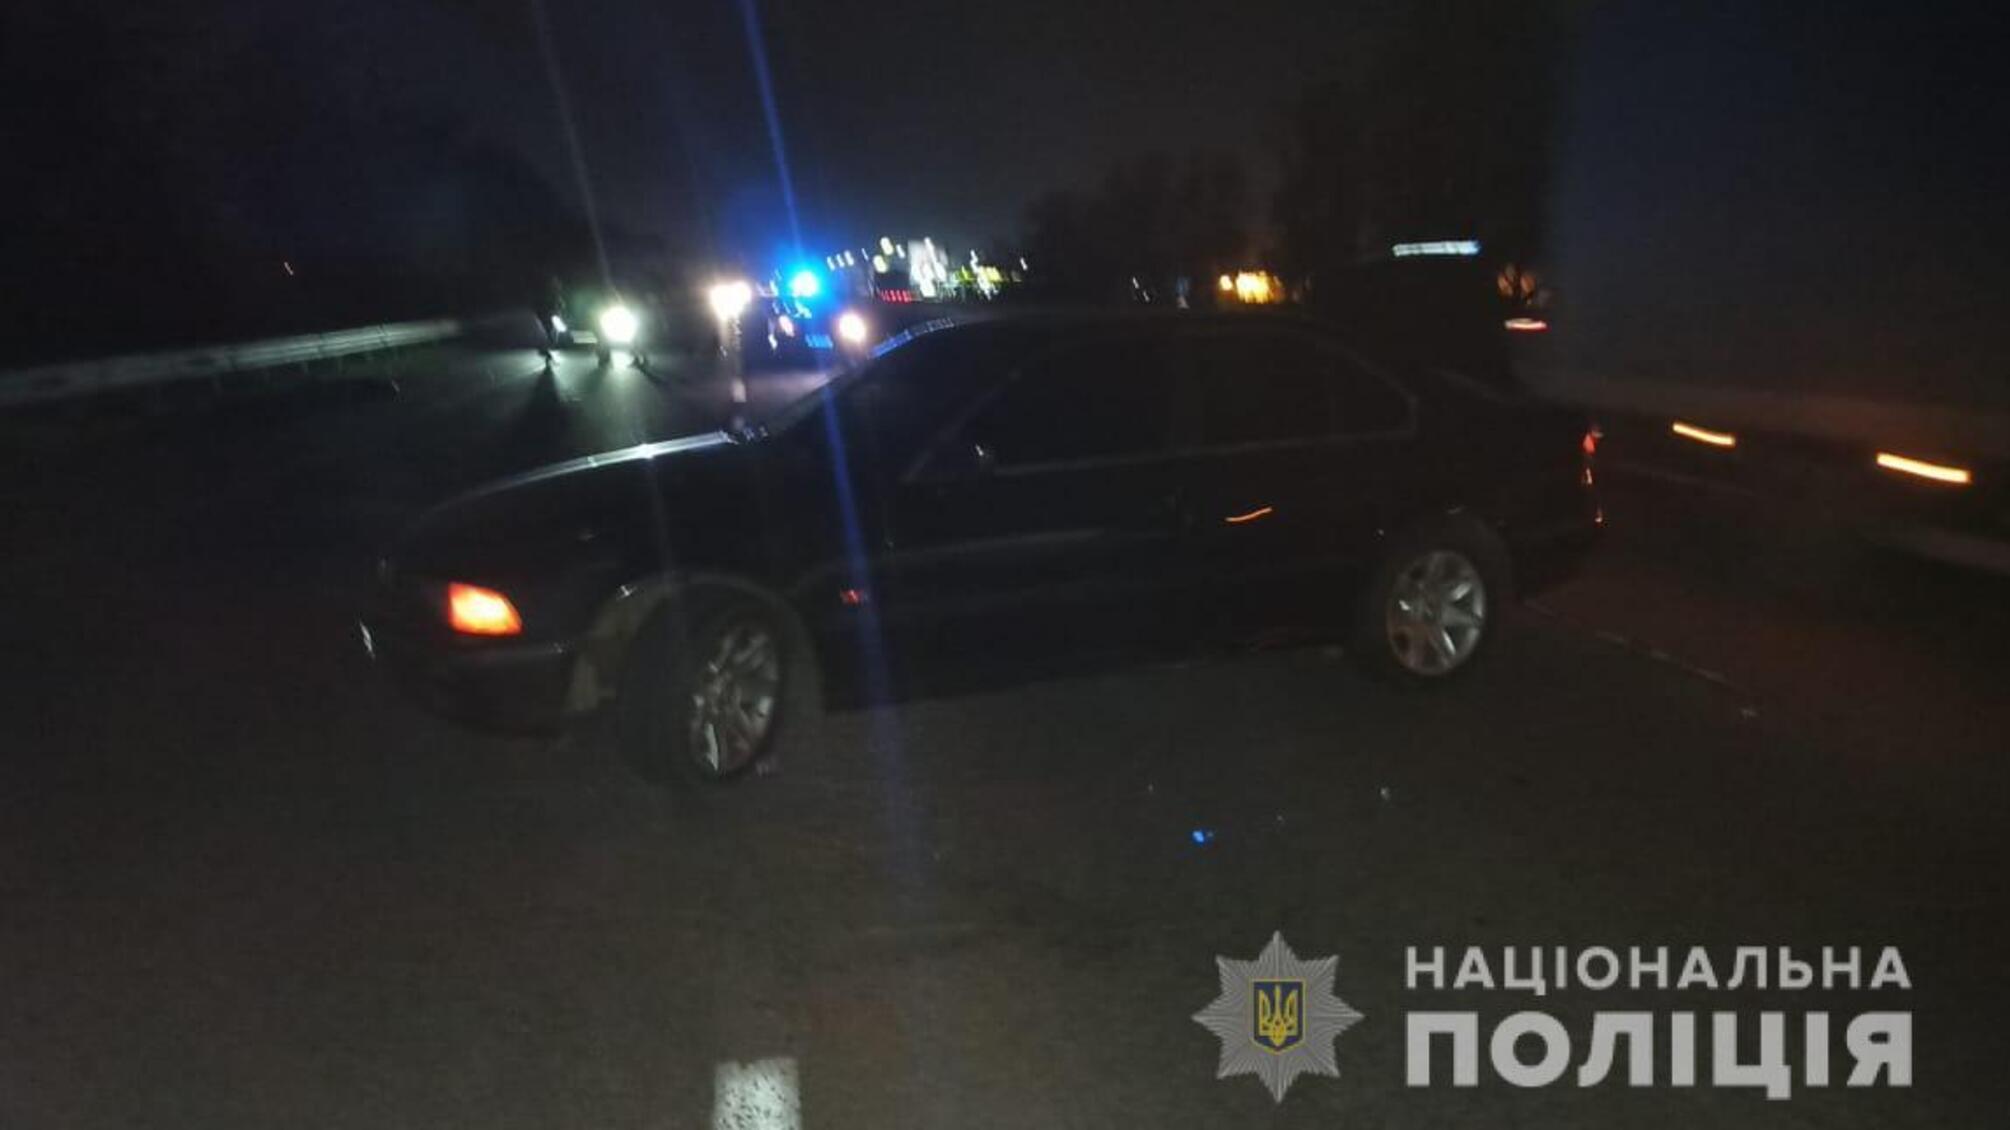 Поліцейські розслідують обставини ДТП в Біляївському районі, в якій загинув пішохід